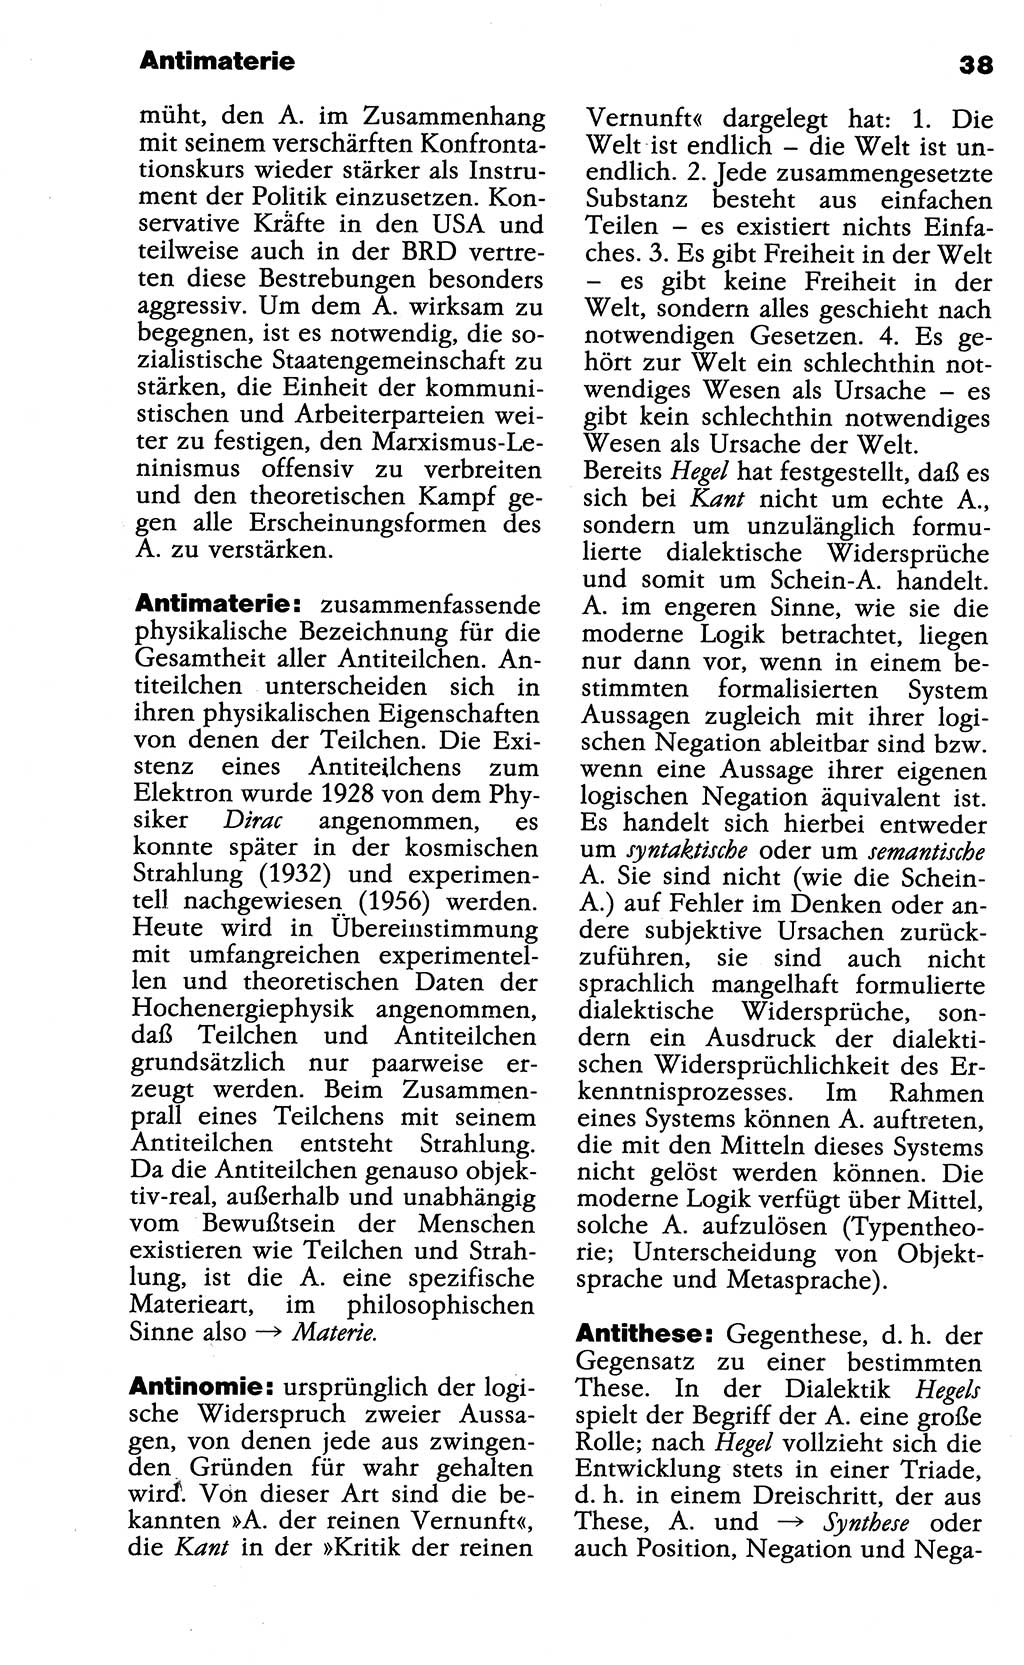 Wörterbuch der marxistisch-leninistischen Philosophie [Deutsche Demokratische Republik (DDR)] 1985, Seite 38 (Wb. ML Phil. DDR 1985, S. 38)